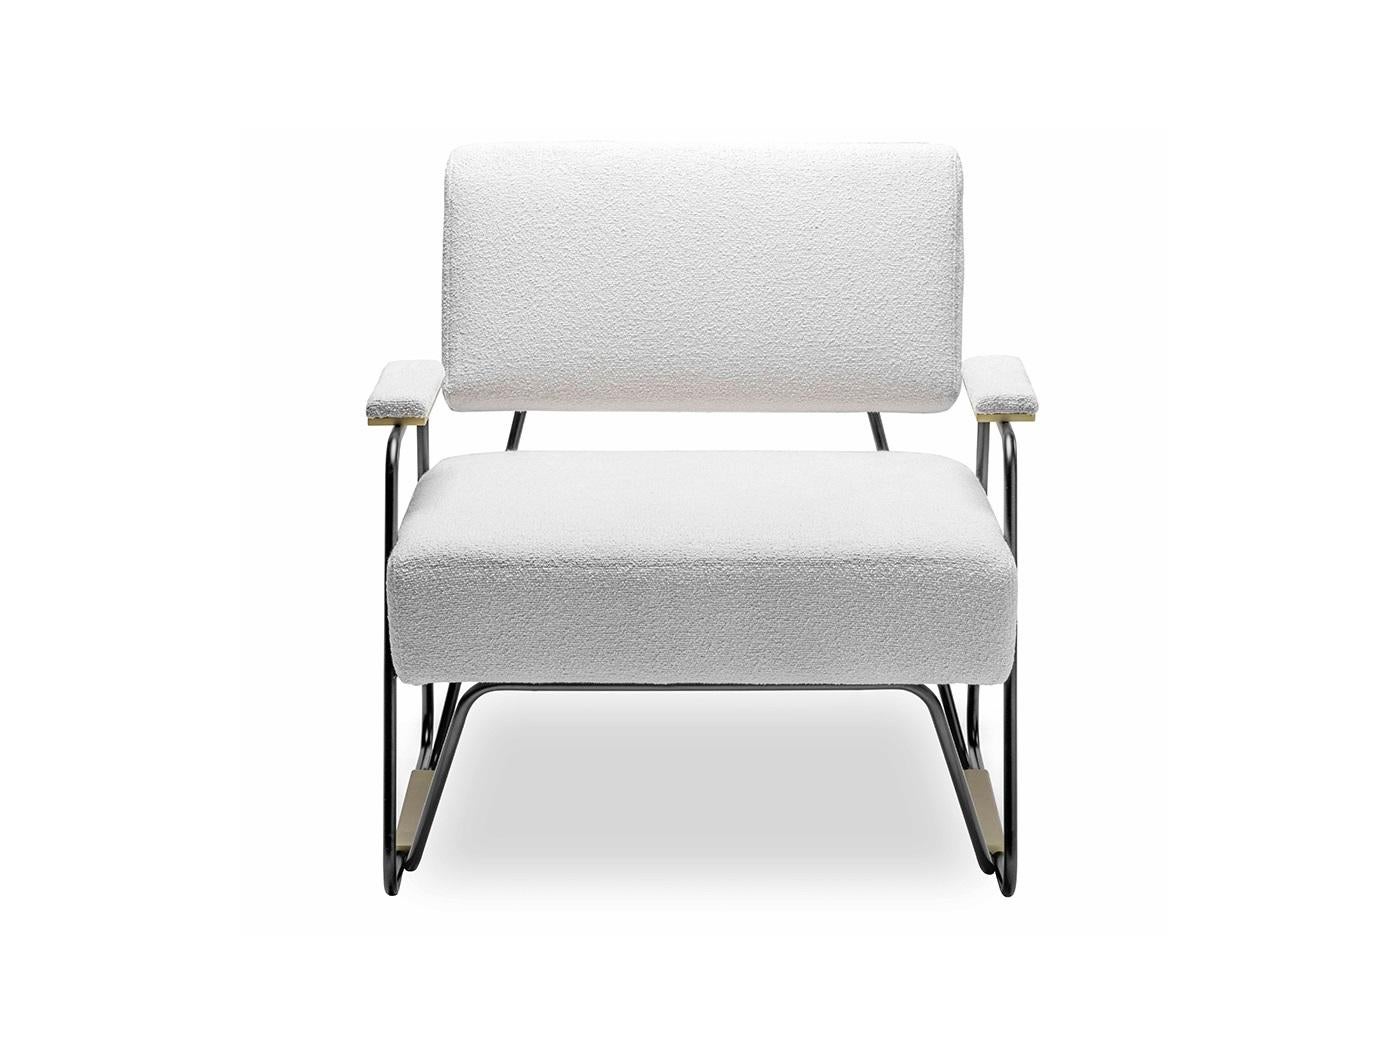 Moderner Sessel mit Kufengestell aus schwarzem Eisen mit gebürsteten Messingdetails und weißem Bouclé-Stoff.
Mehrere Schaumstoffschichten mit unterschiedlichen Dichten sorgen für hohen Komfort.
Kundenspezifische Größen und Materialien